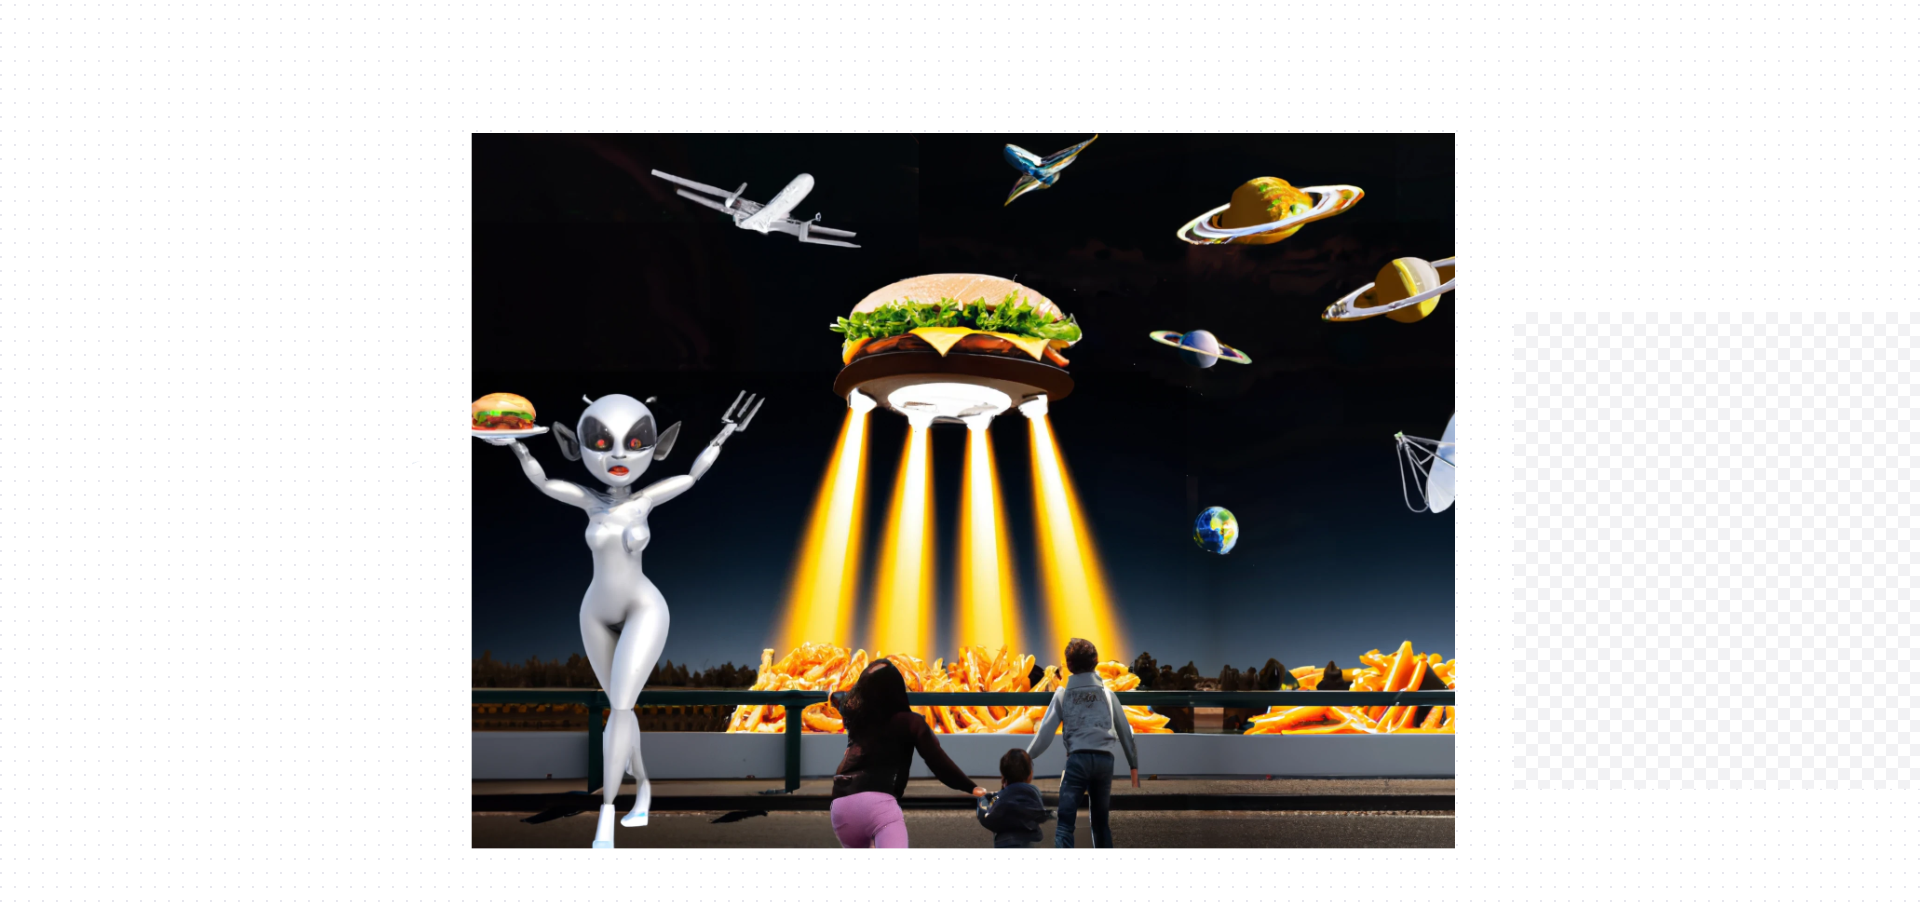 les aliens manipule des enfants pour voler des frites